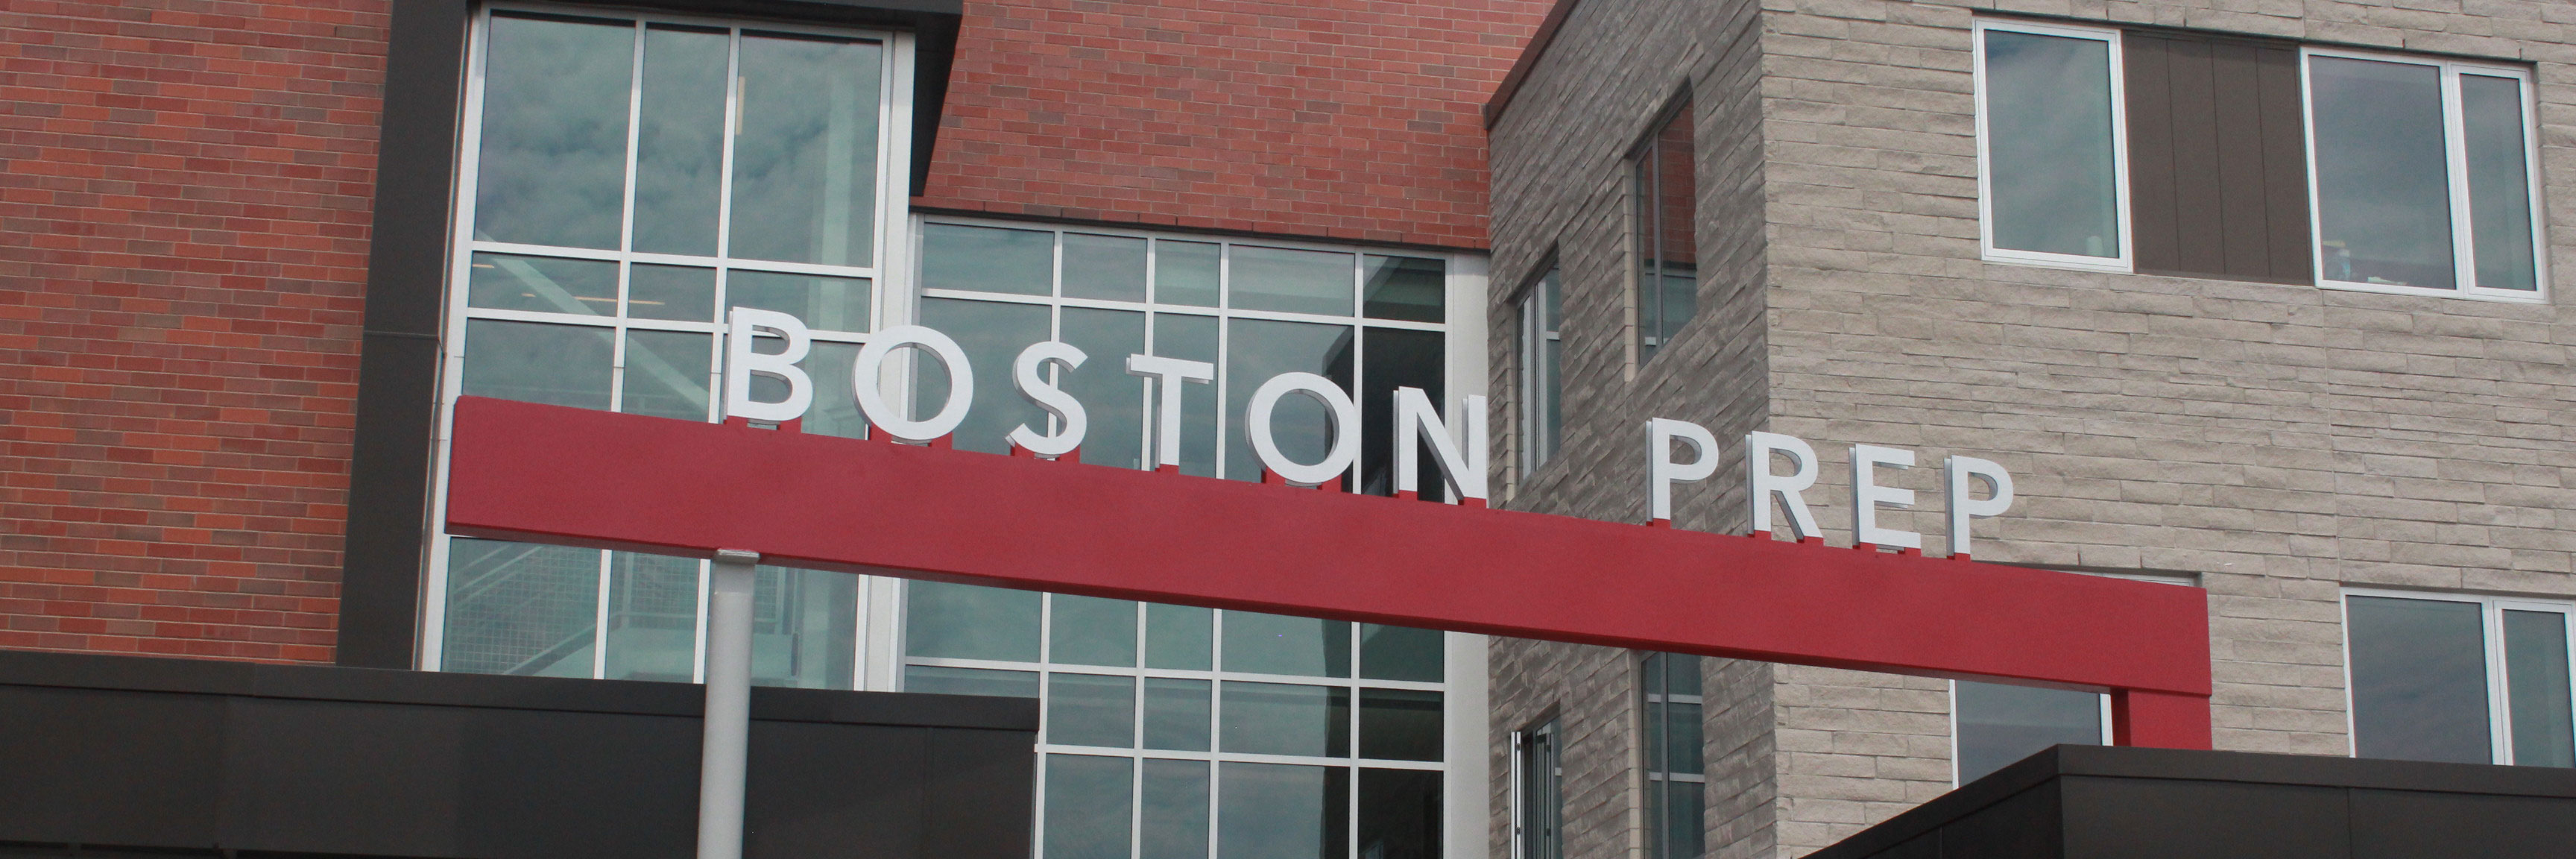 Boston Prep Charter Public School 